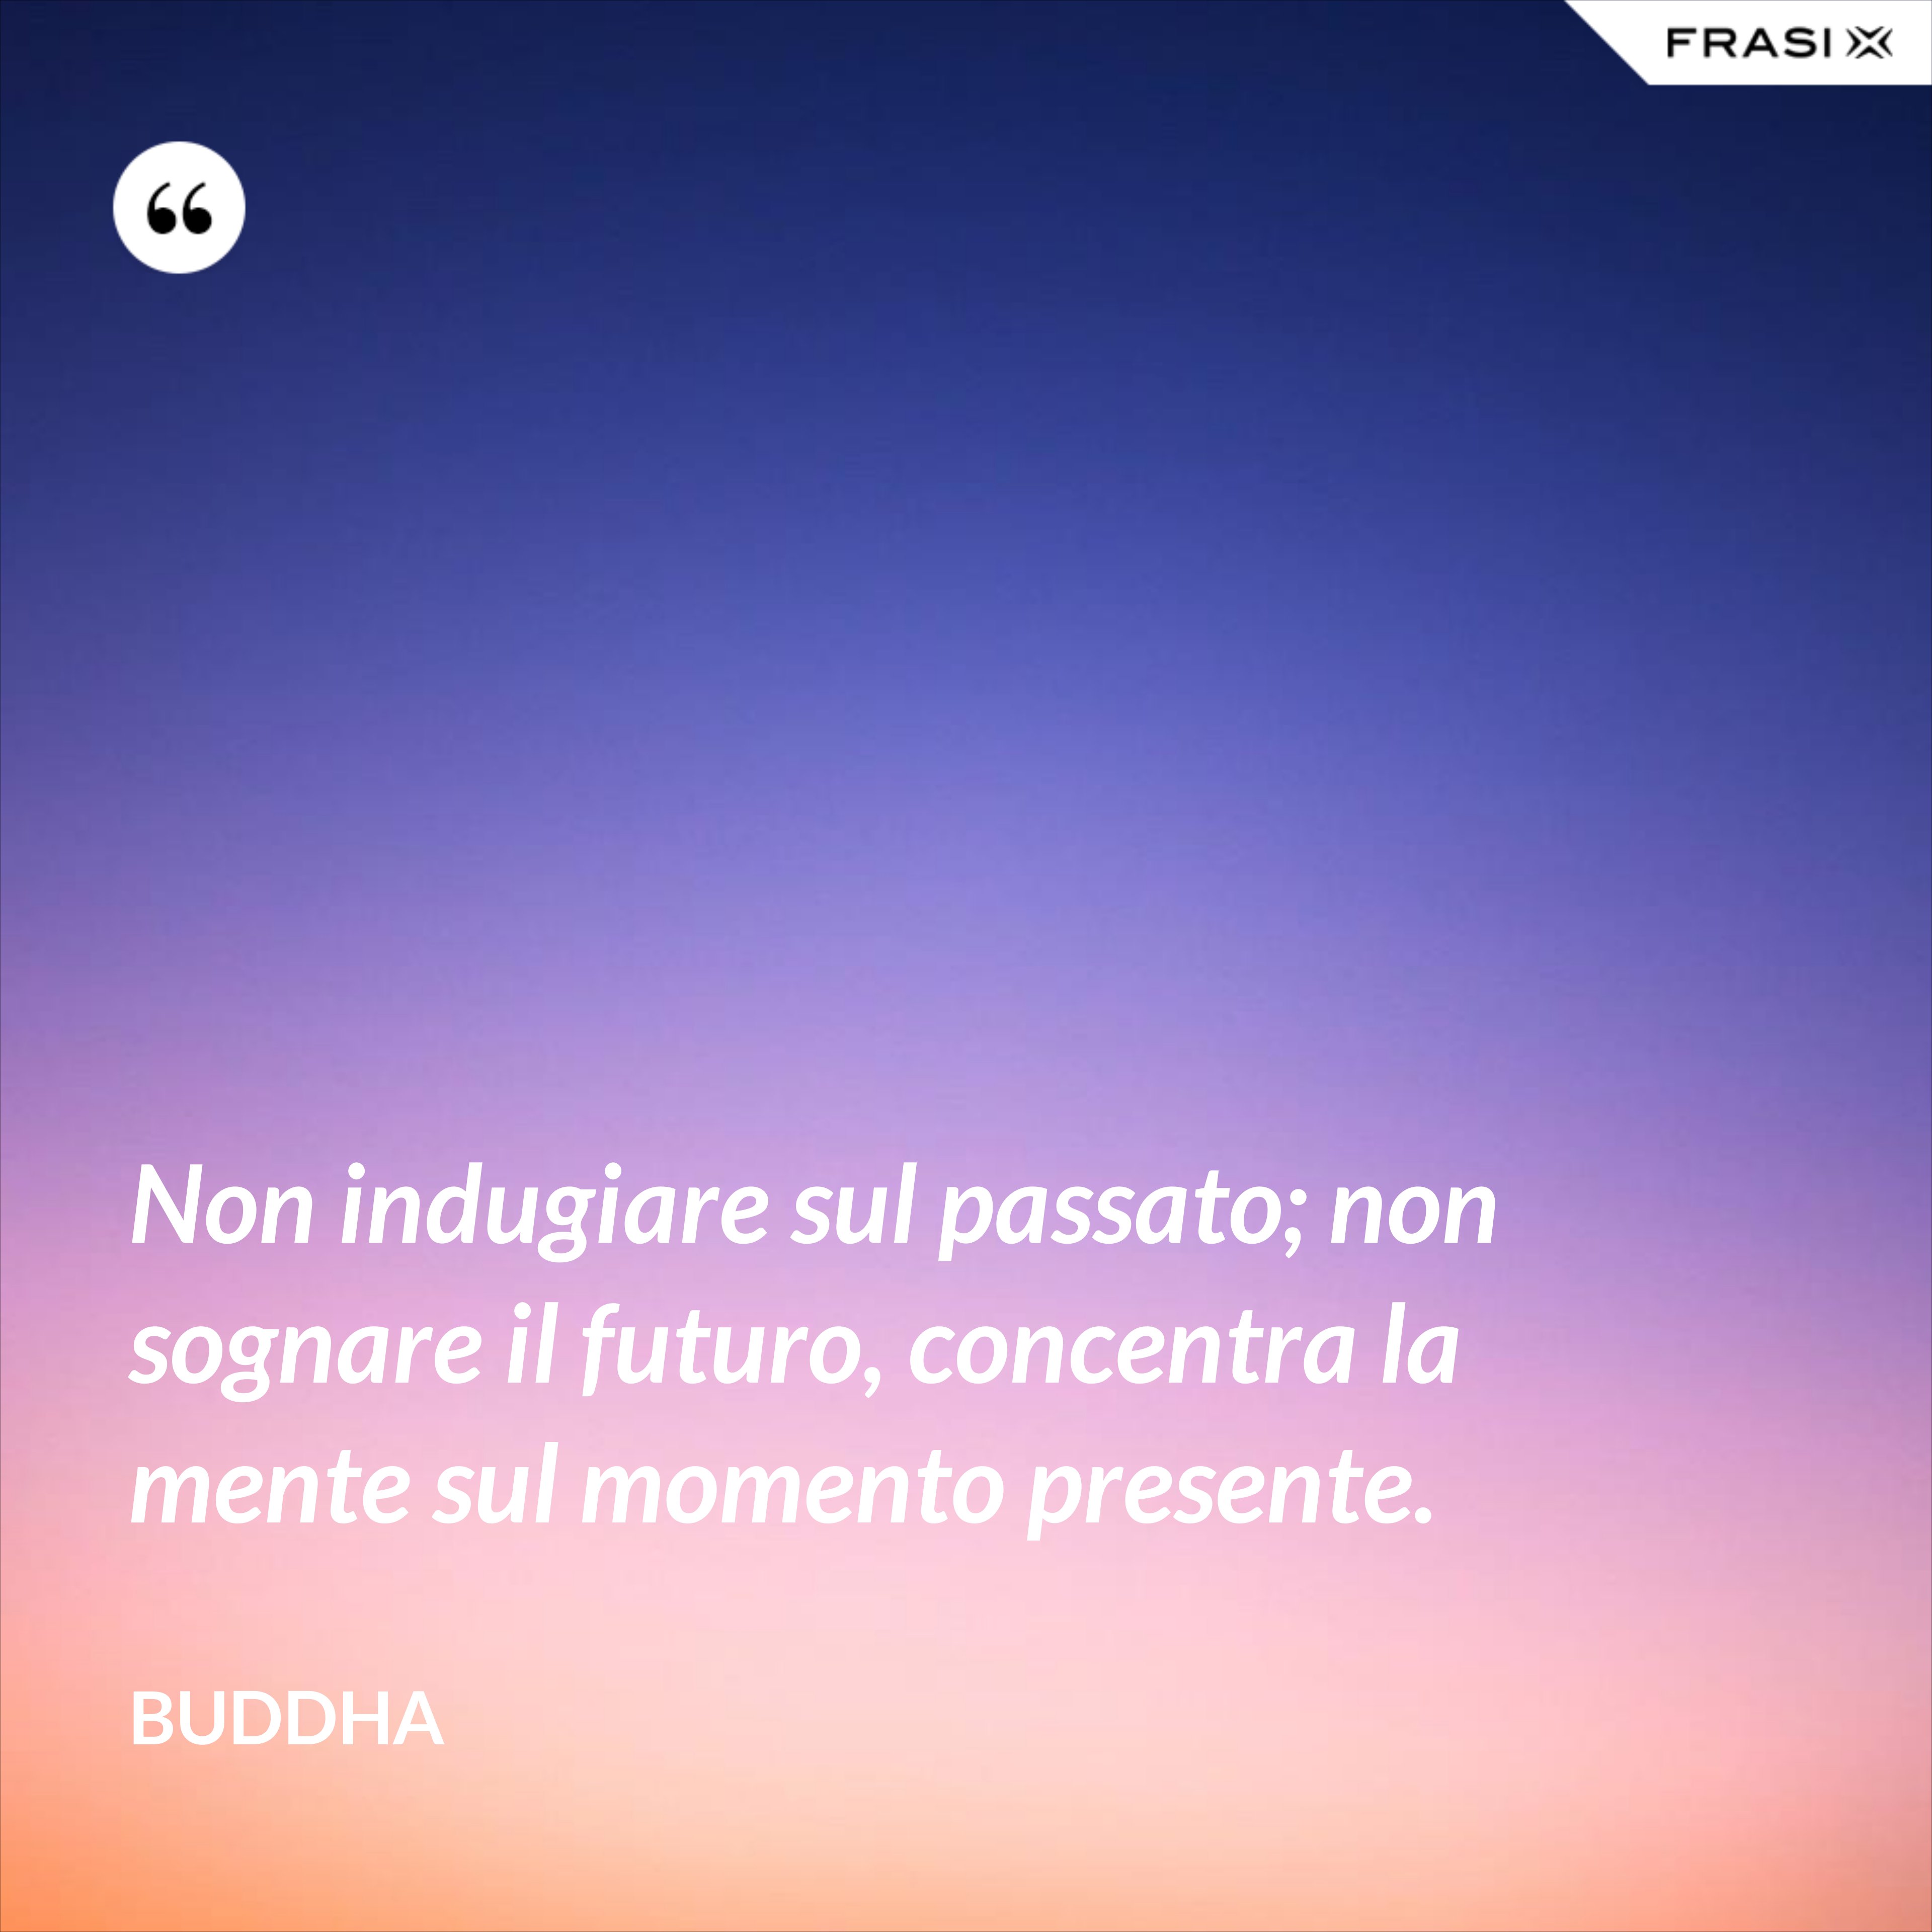 Non indugiare sul passato; non sognare il futuro, concentra la mente sul momento presente. - Buddha